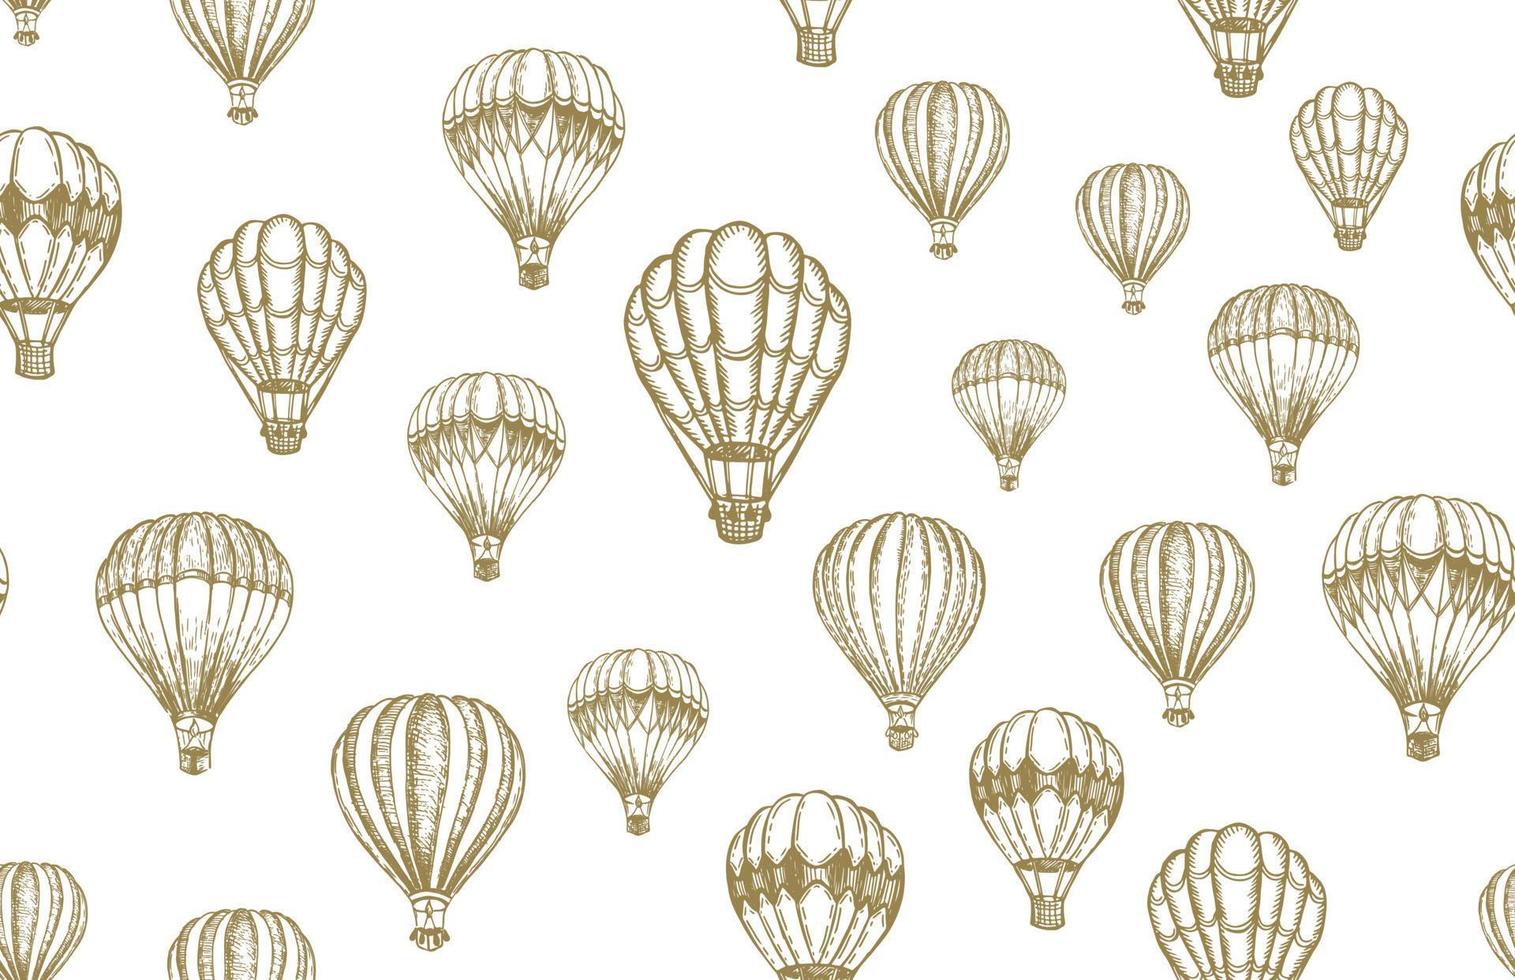 fliegende Heißluftballons. handgezeichnete Abbildung. vektor